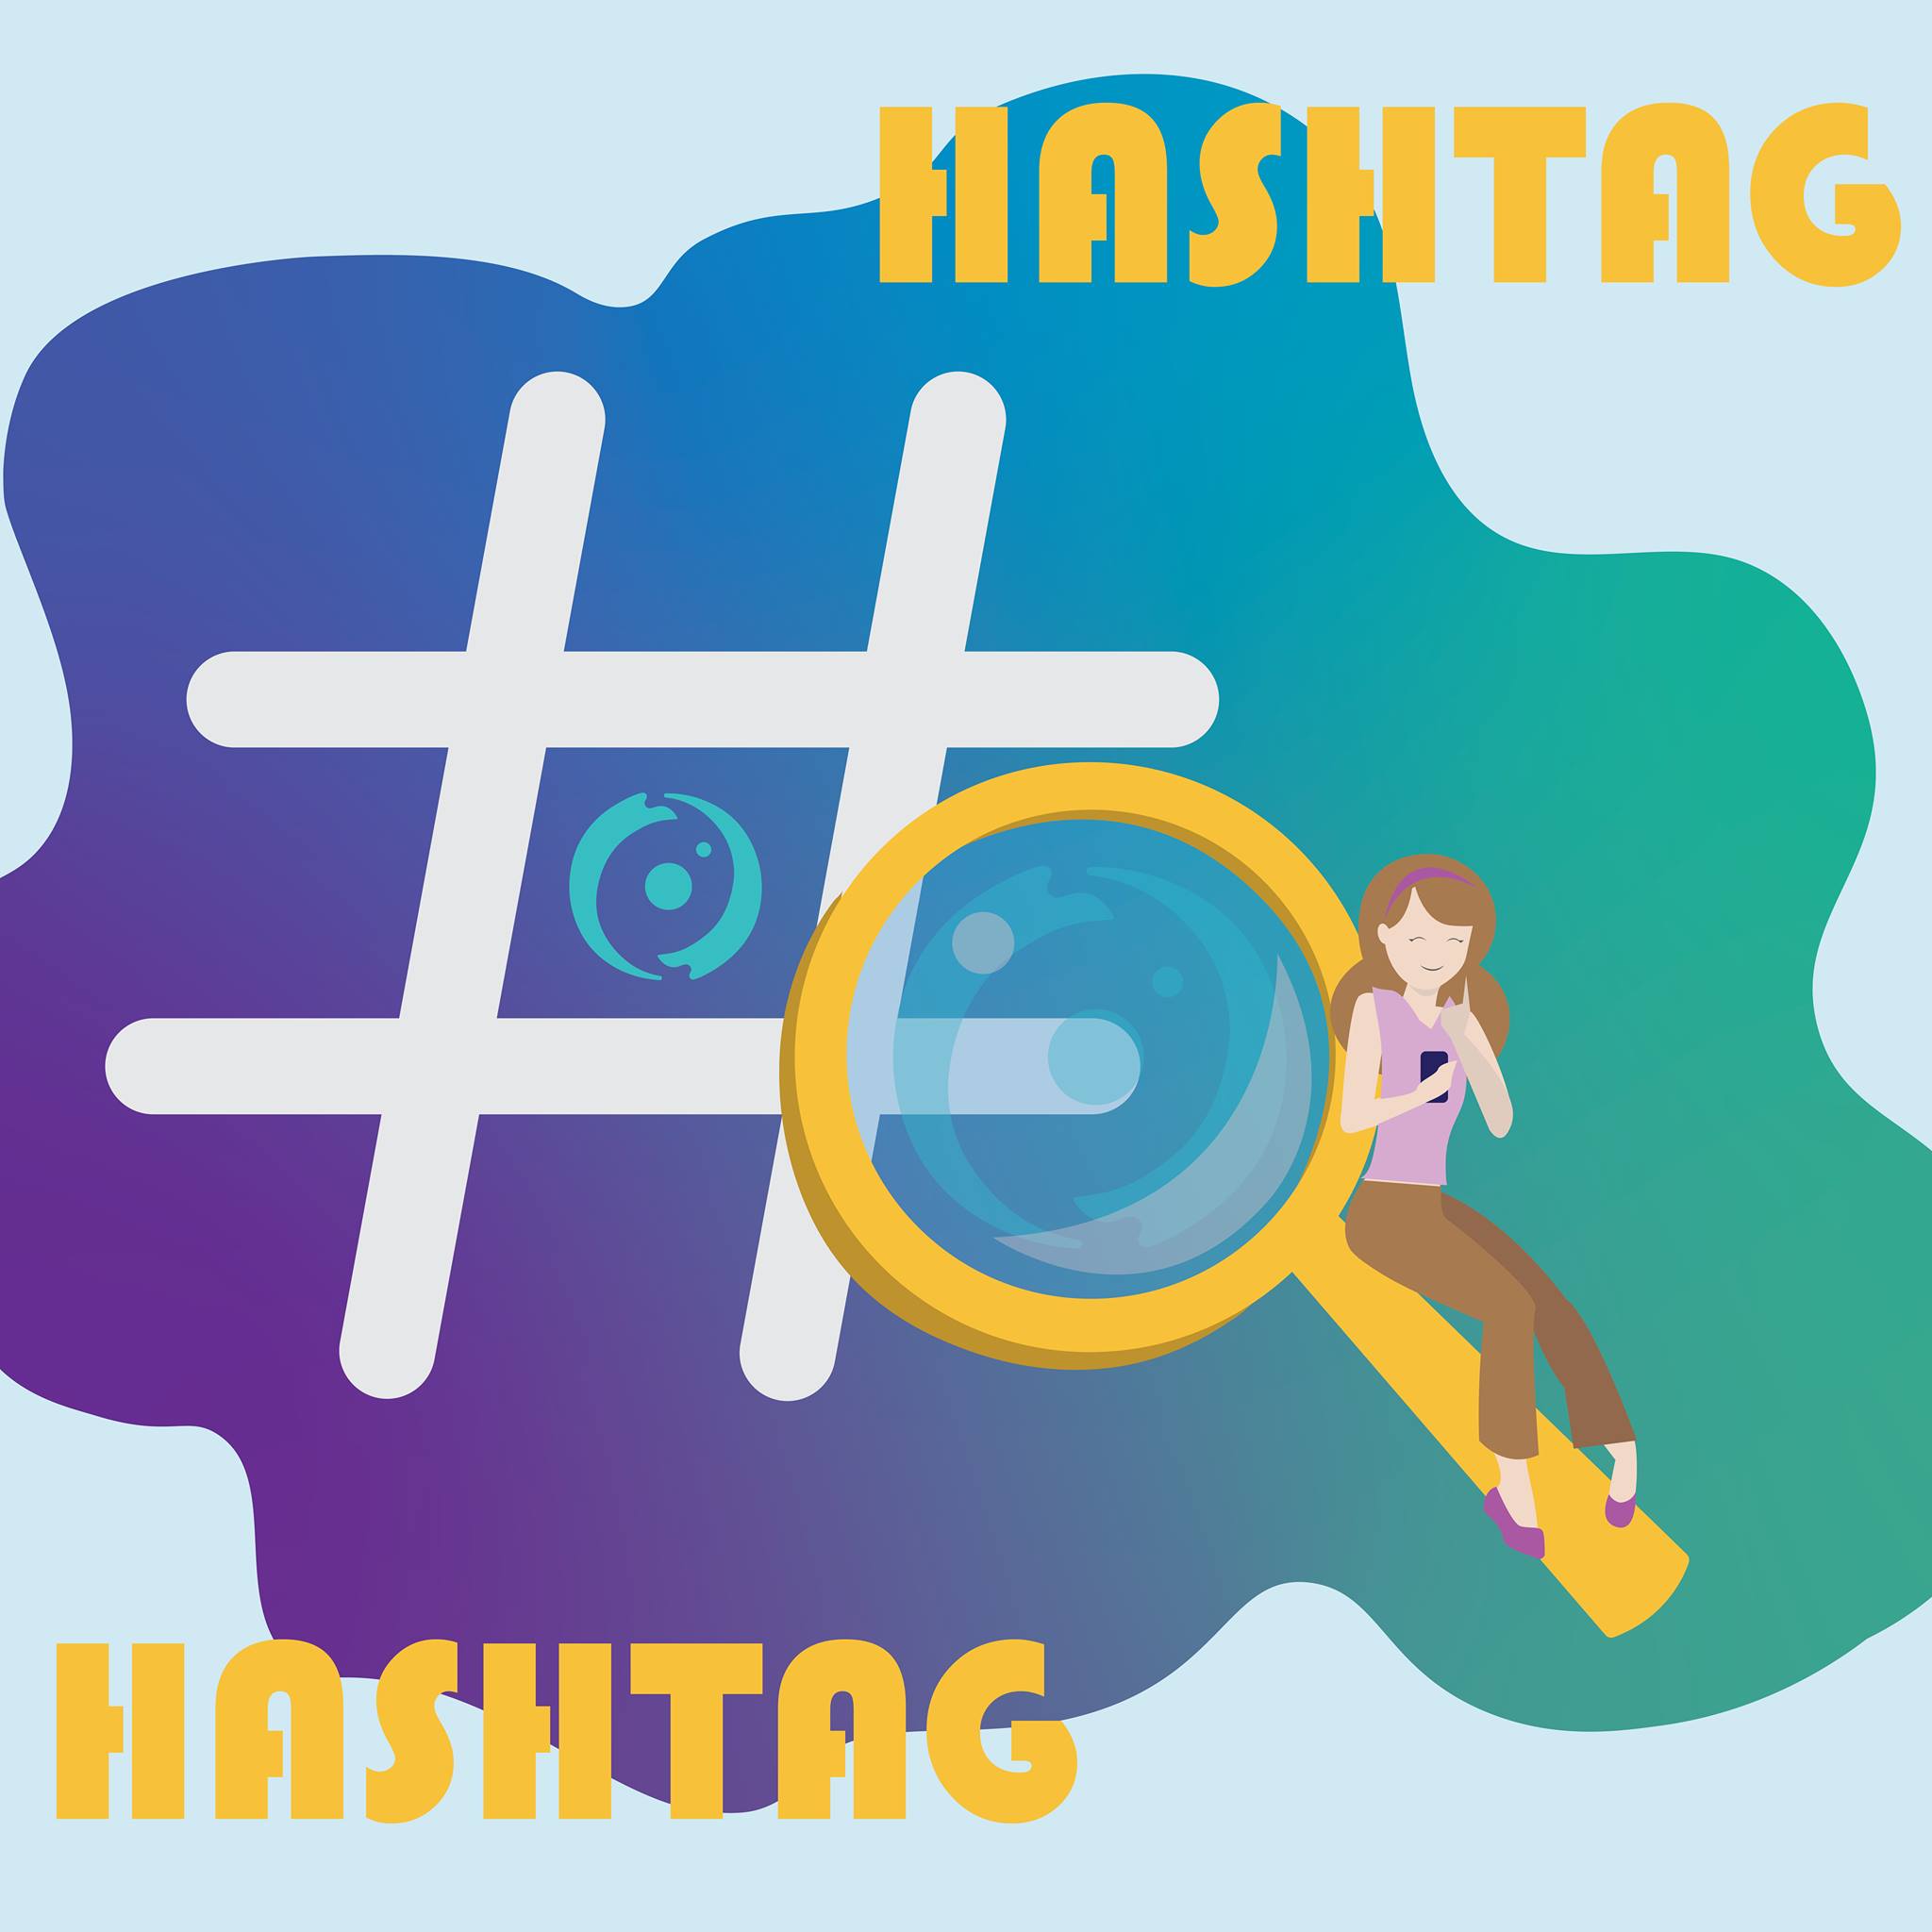 El uso del hashtag